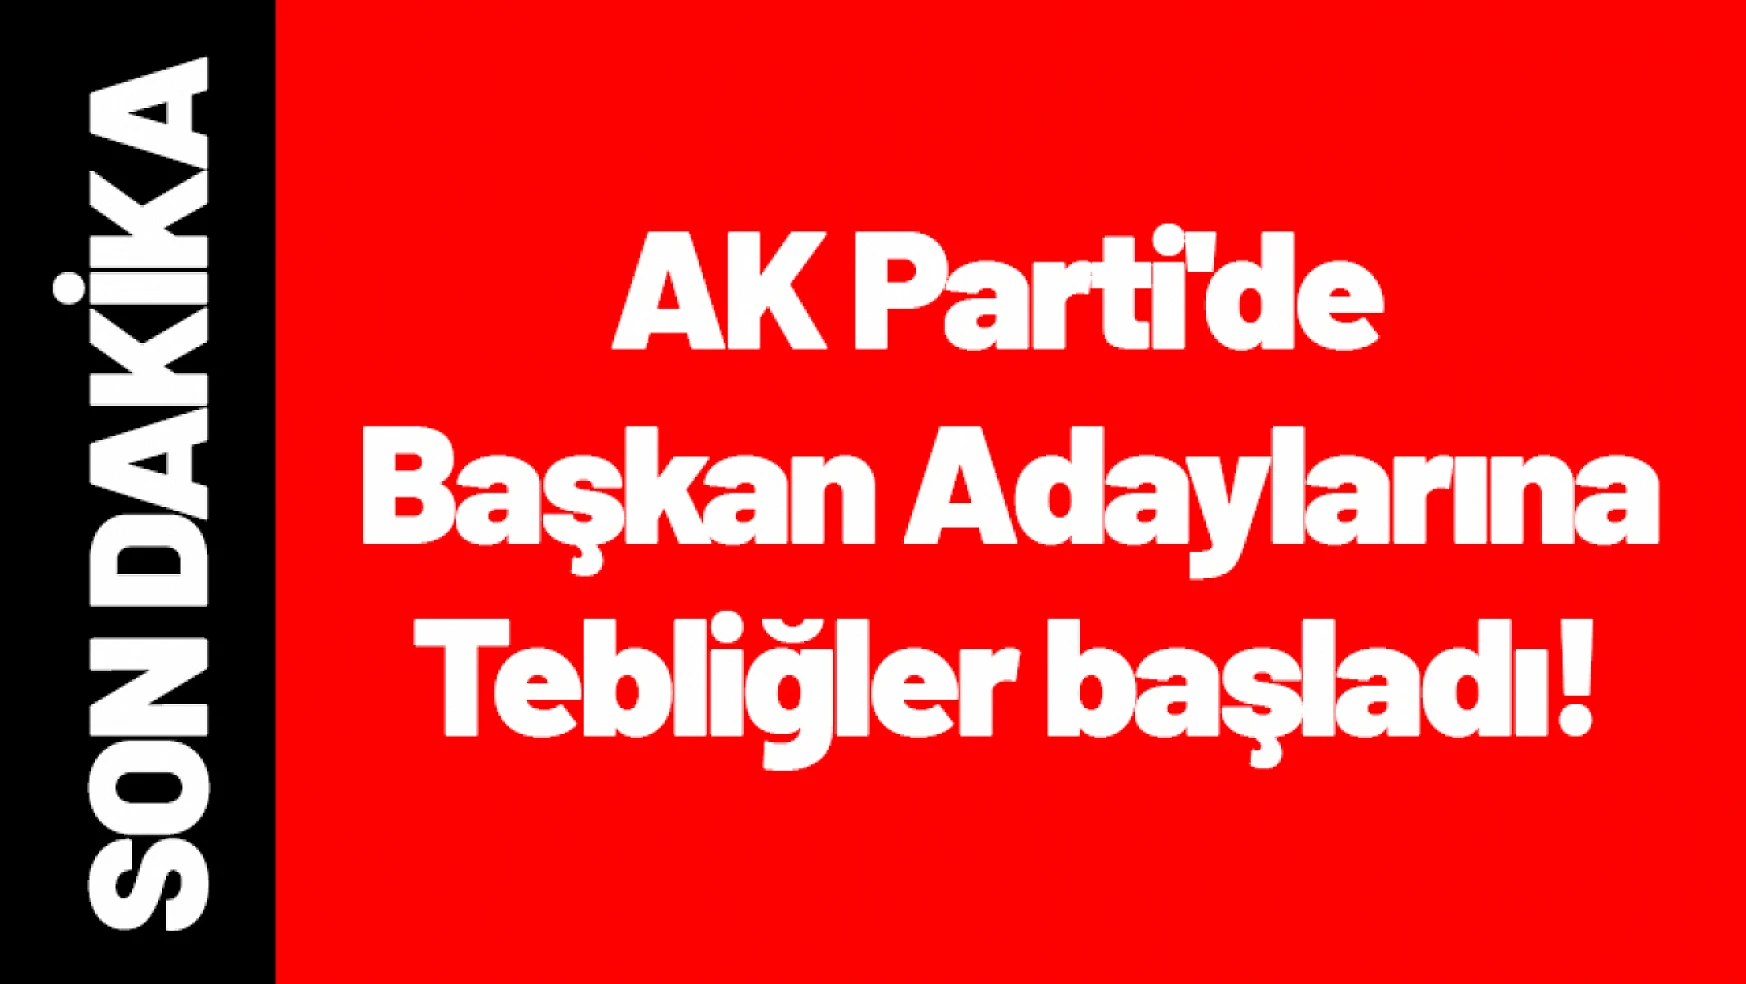 AK Parti'de Tebliğler başladı!